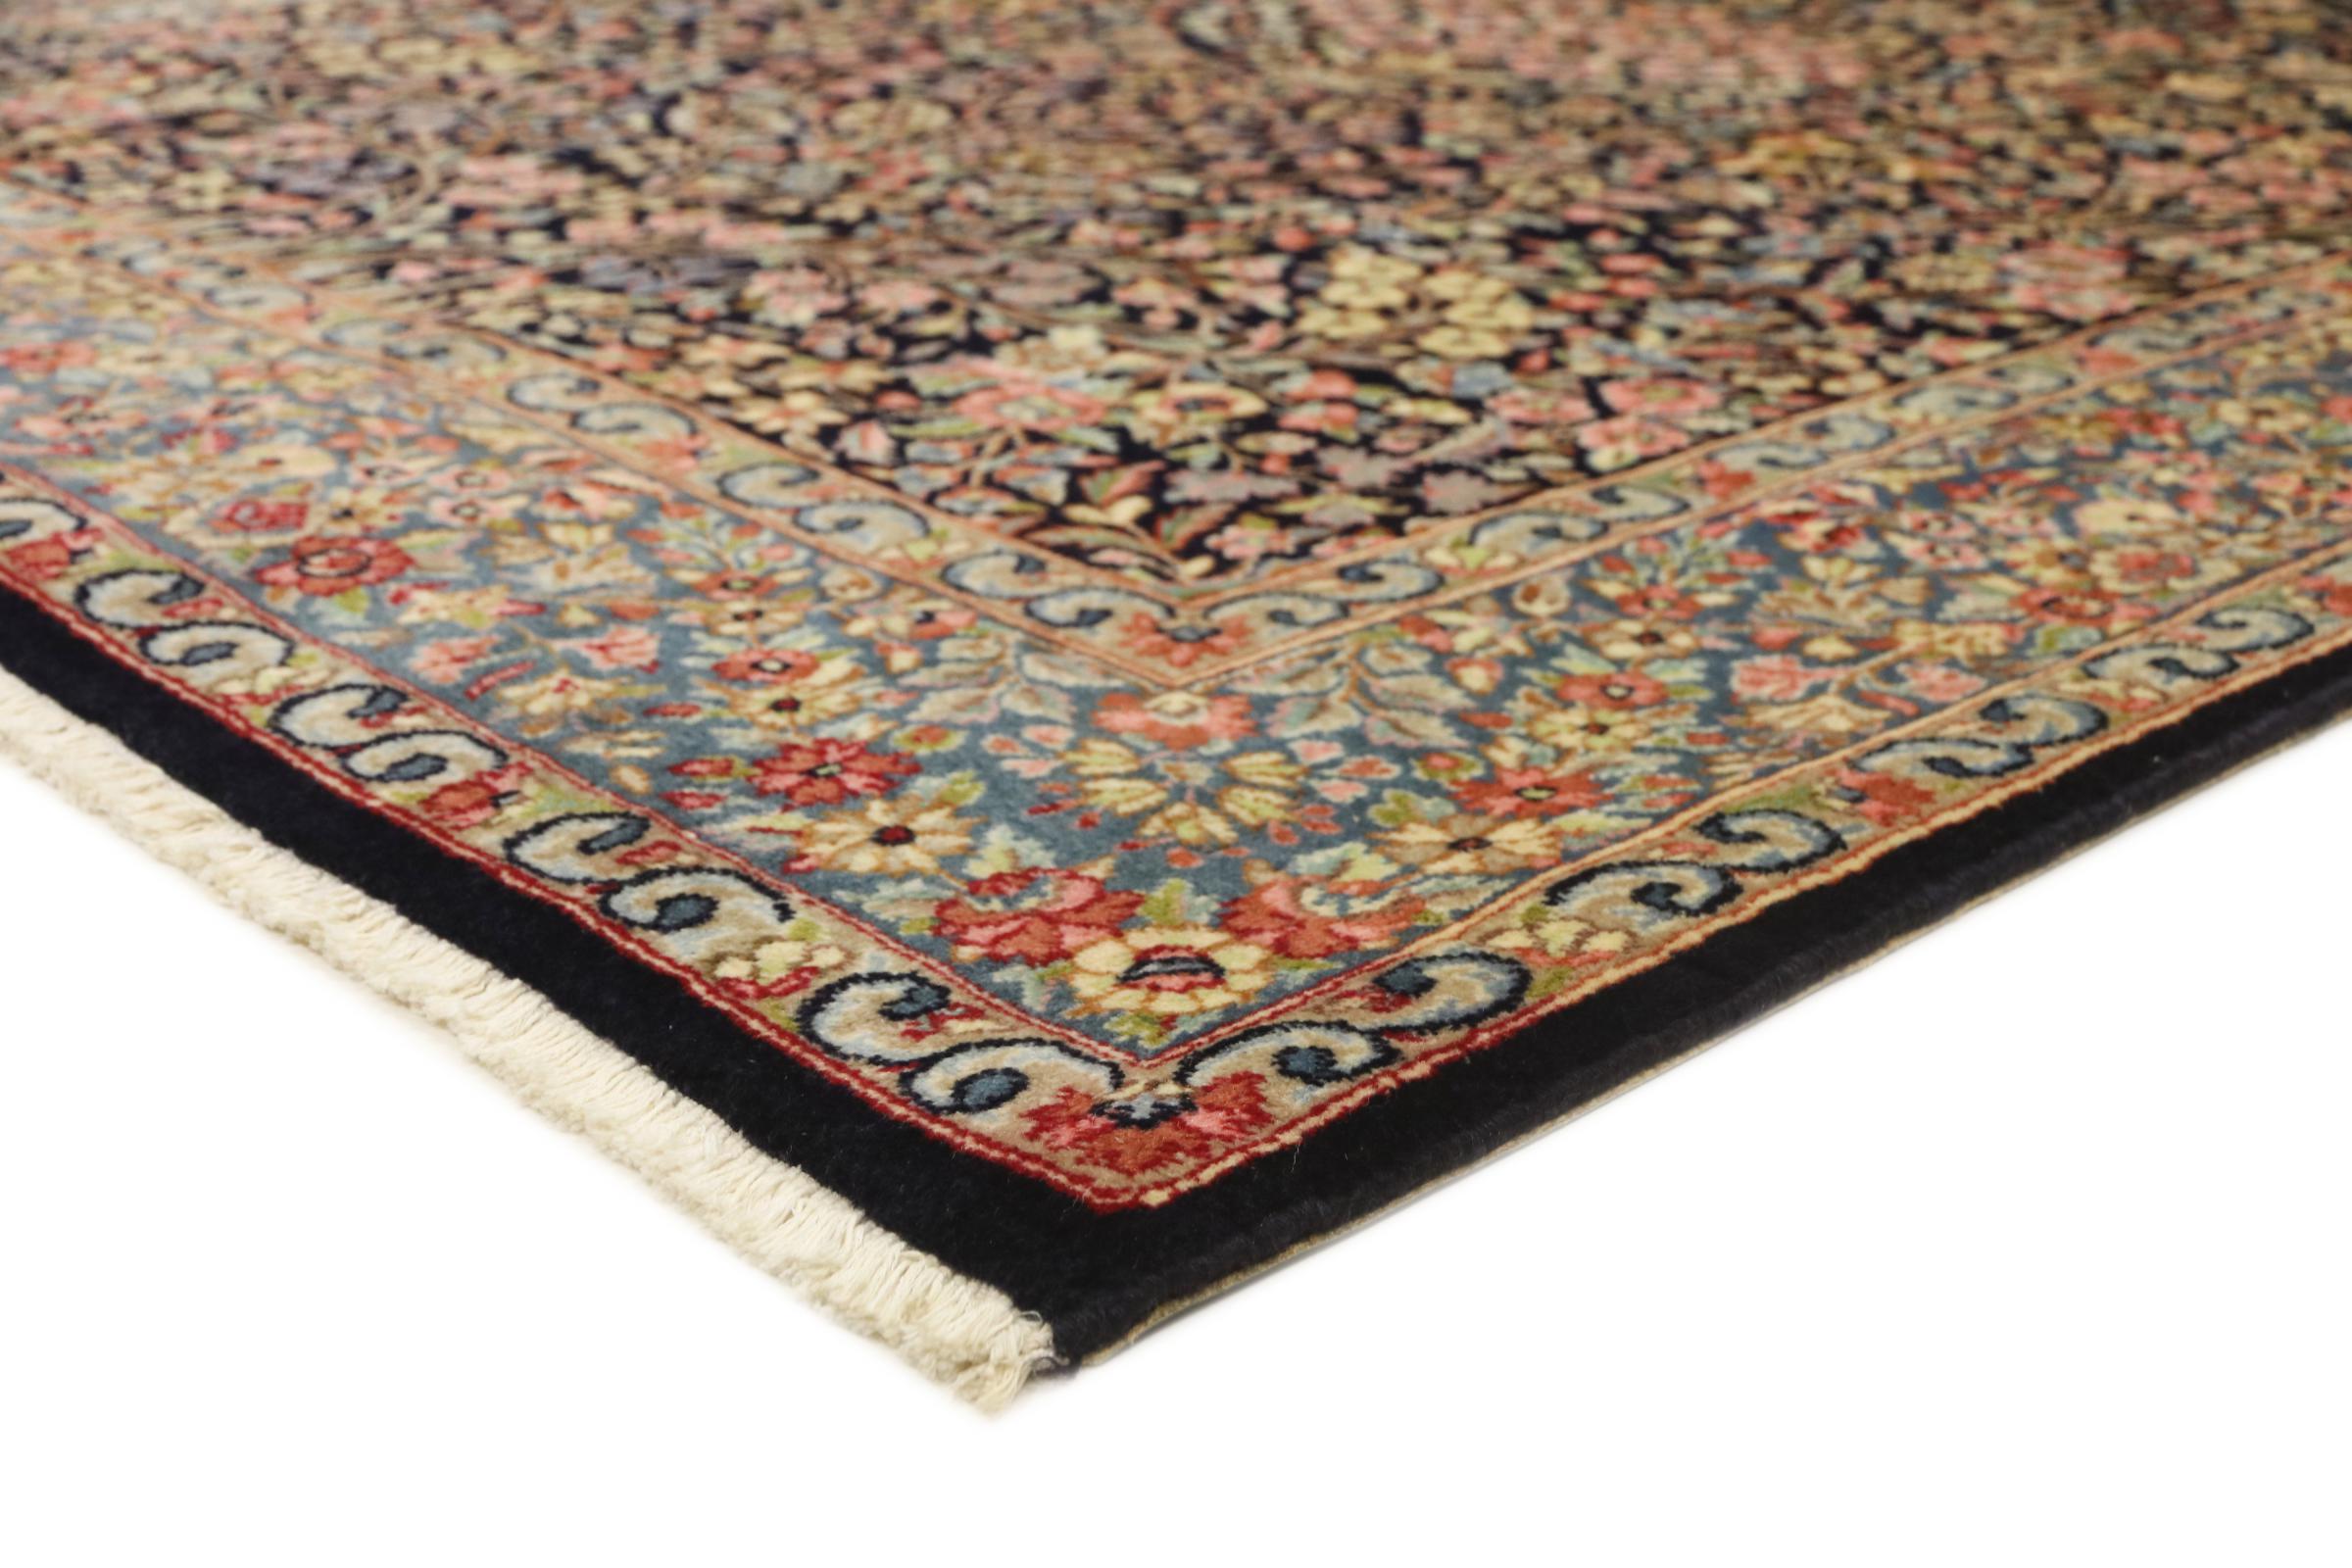 Multiplikation tit forstene Kerman Rafsanjan 234x146 ID170053 | NainTrading: Oriental Carpets in 240x170